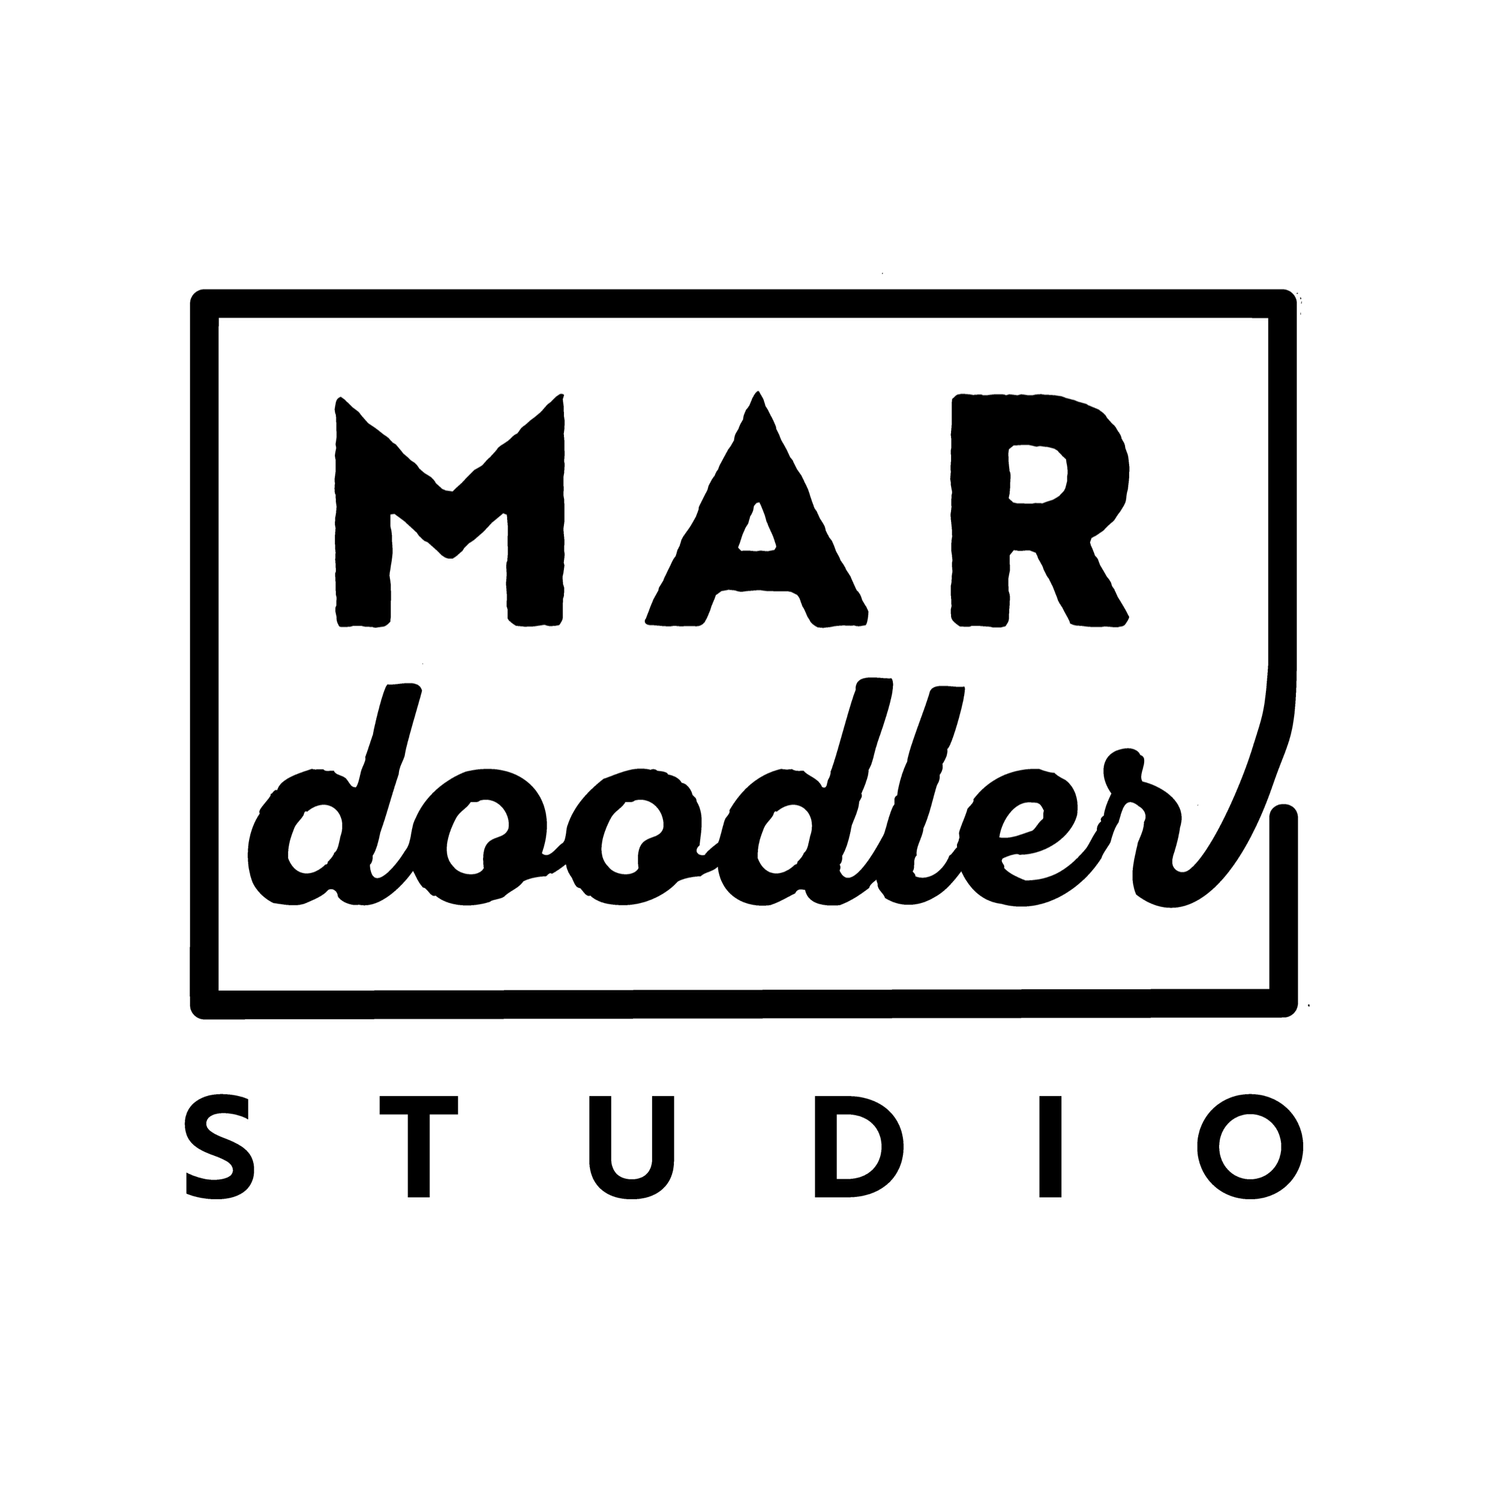 Mardoodler Studio